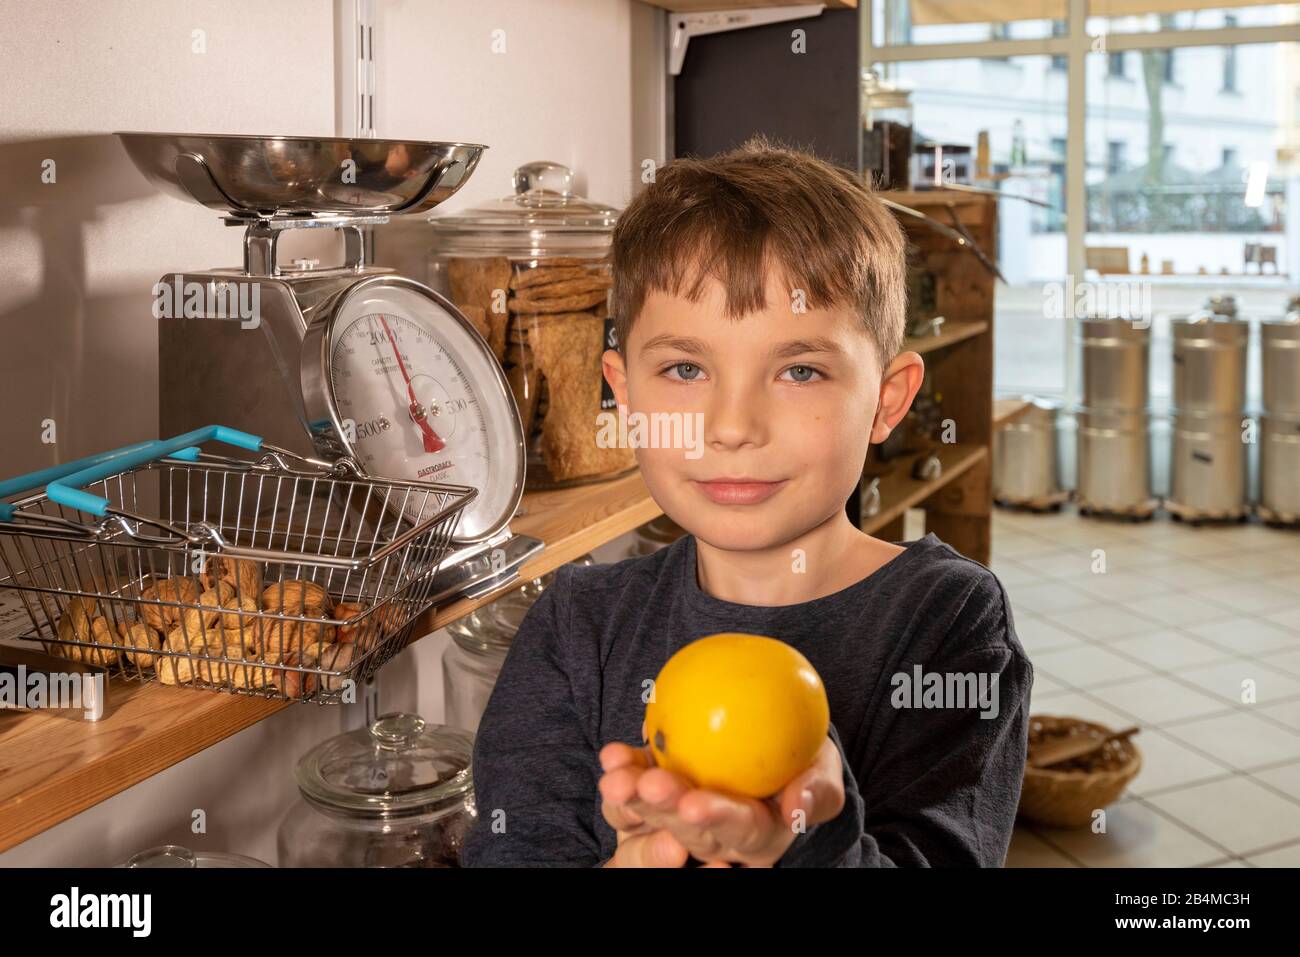 Eine Junge steht in einem Unverpacktladen an einer Waage. Er hält eine Zitrone in den Händen. Stock Photo